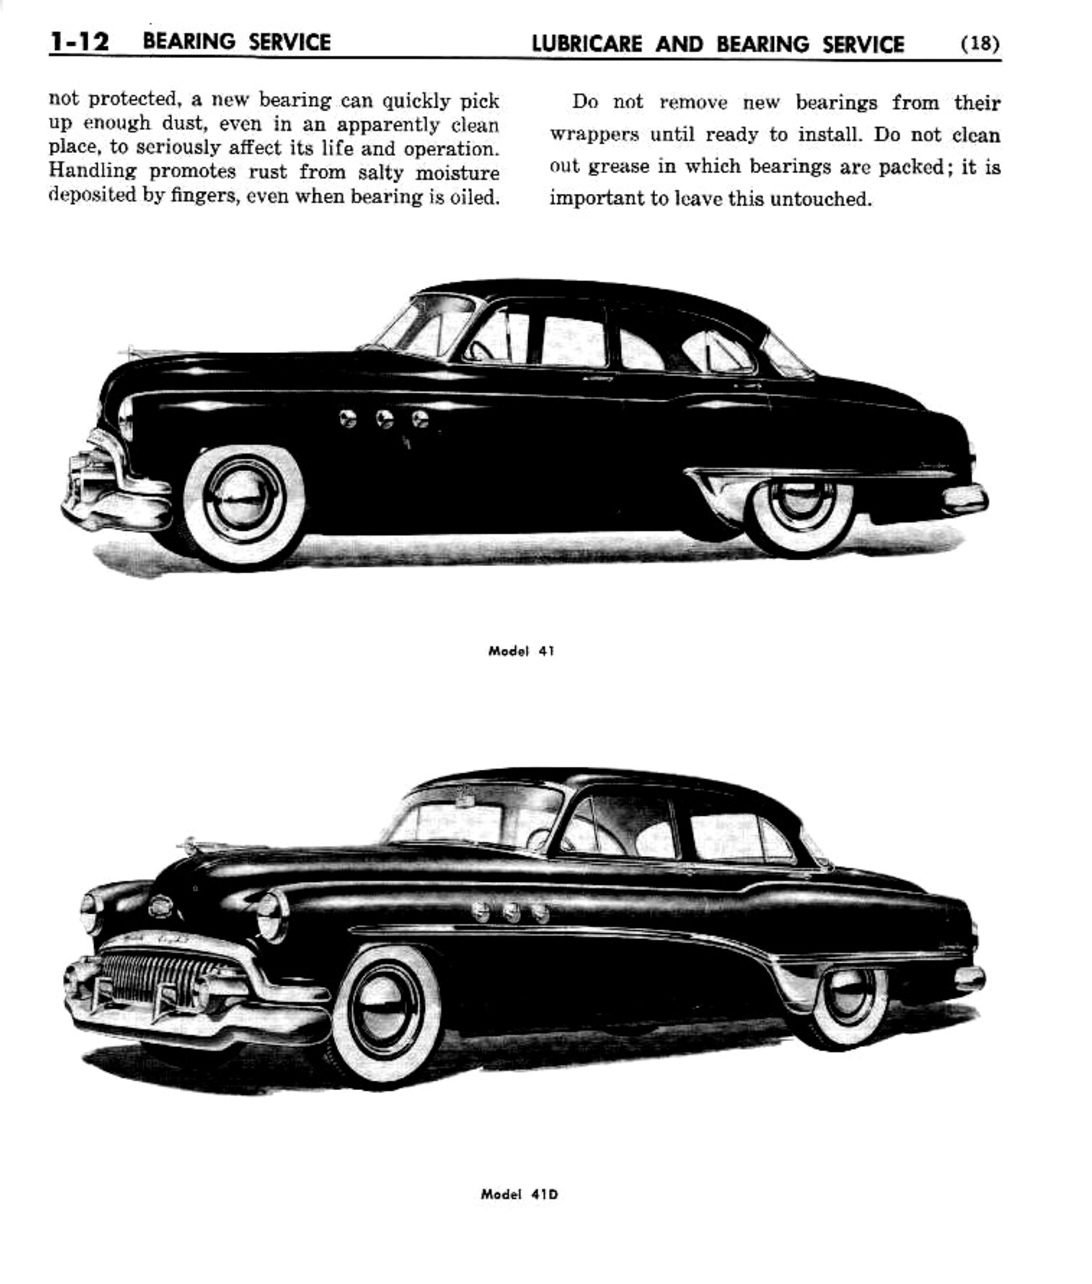 n_02 1951 Buick Shop Manual - Lubricare-012-012.jpg